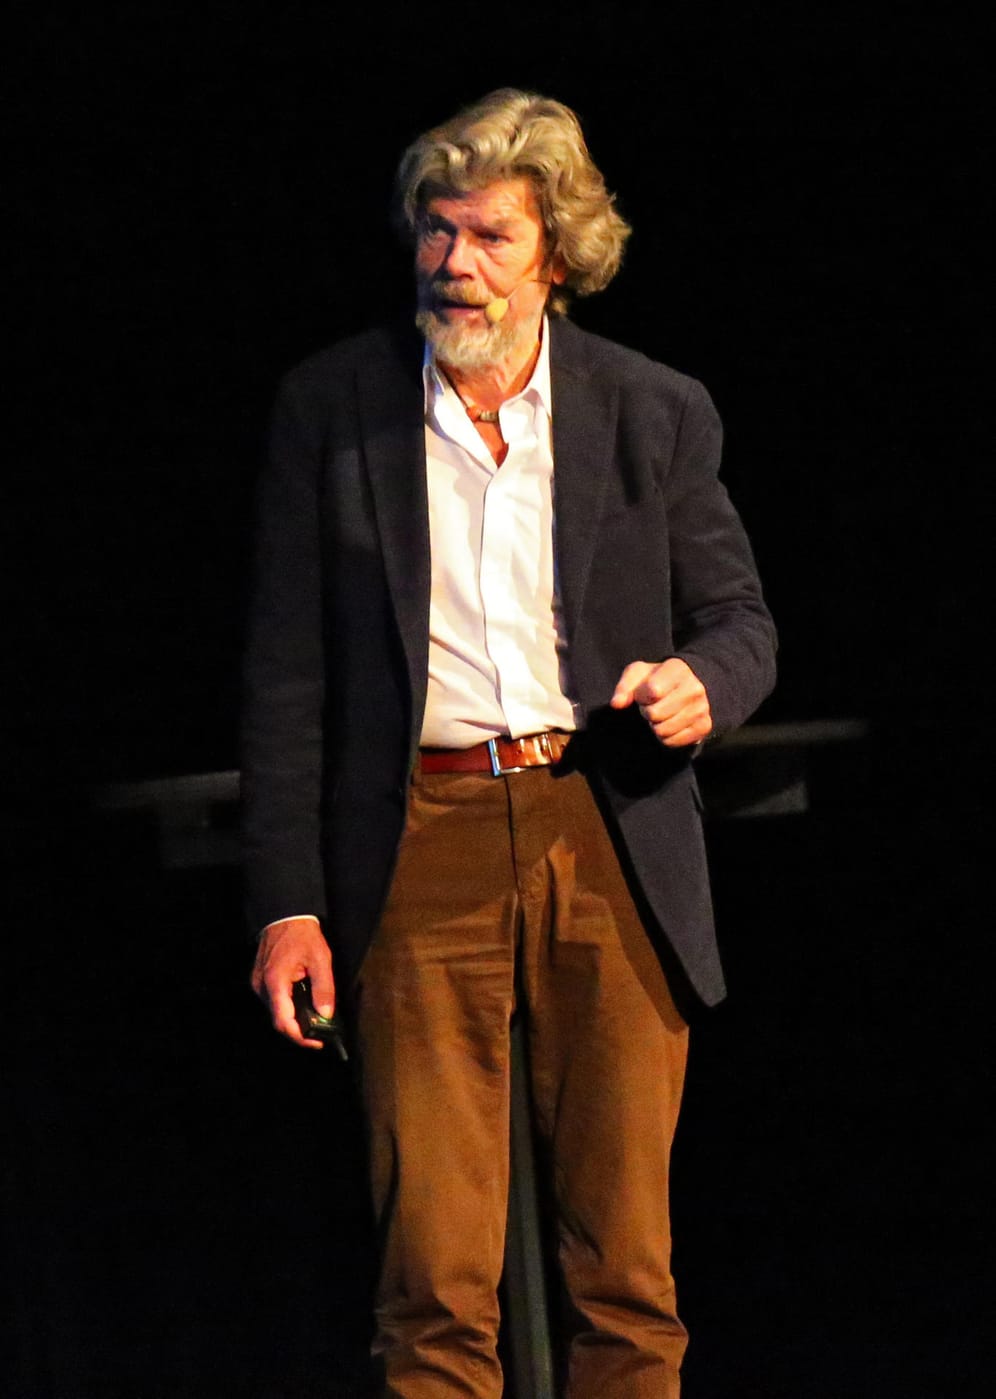 Reinhold Messner: Die Bergsteiger-Ikone gab im August bekannt, dass seine Frau ihn nach zehn Jahren verlassen hat, aber er ist bereits neu verliebt.